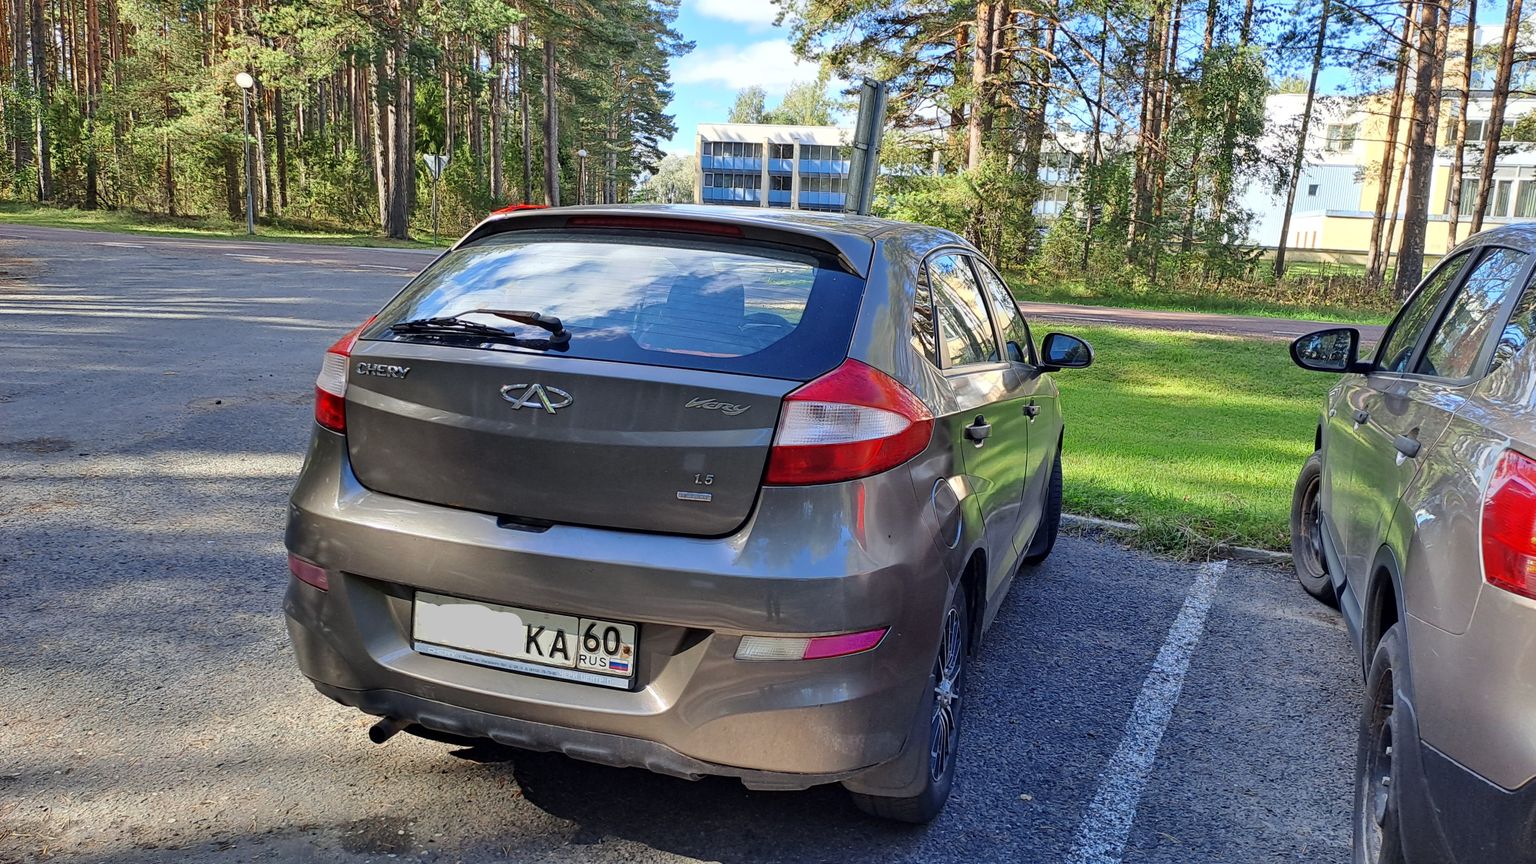 Esialgu saab Vene numbriga autoga Eestis liigelda. Pildil Venemaal registreeritud auto Värska sanatooriumi parklas 18. septembril.